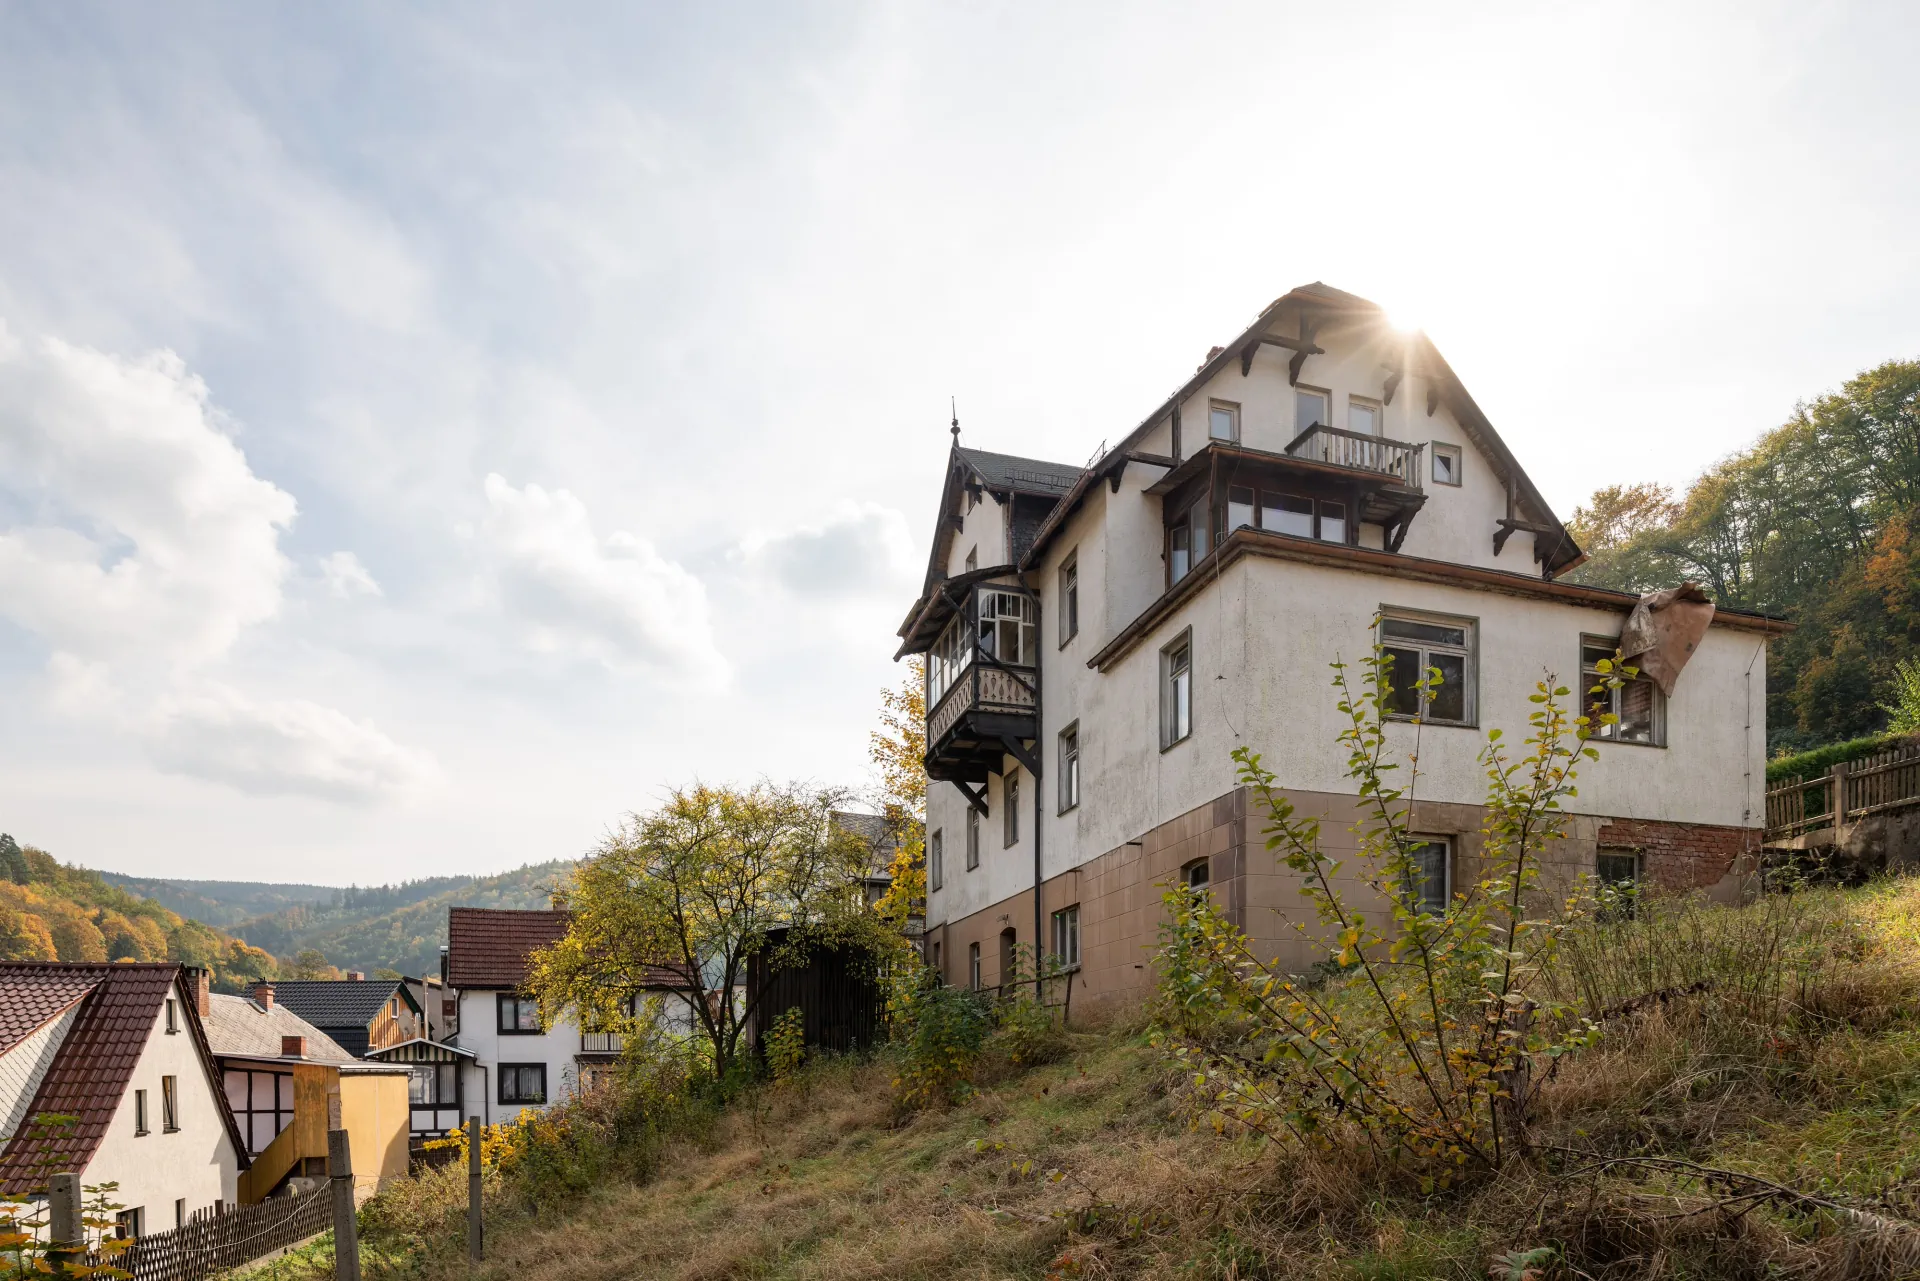 Haus Bräutigam in Schwarzburg 2018, Foto: Thomas Müller